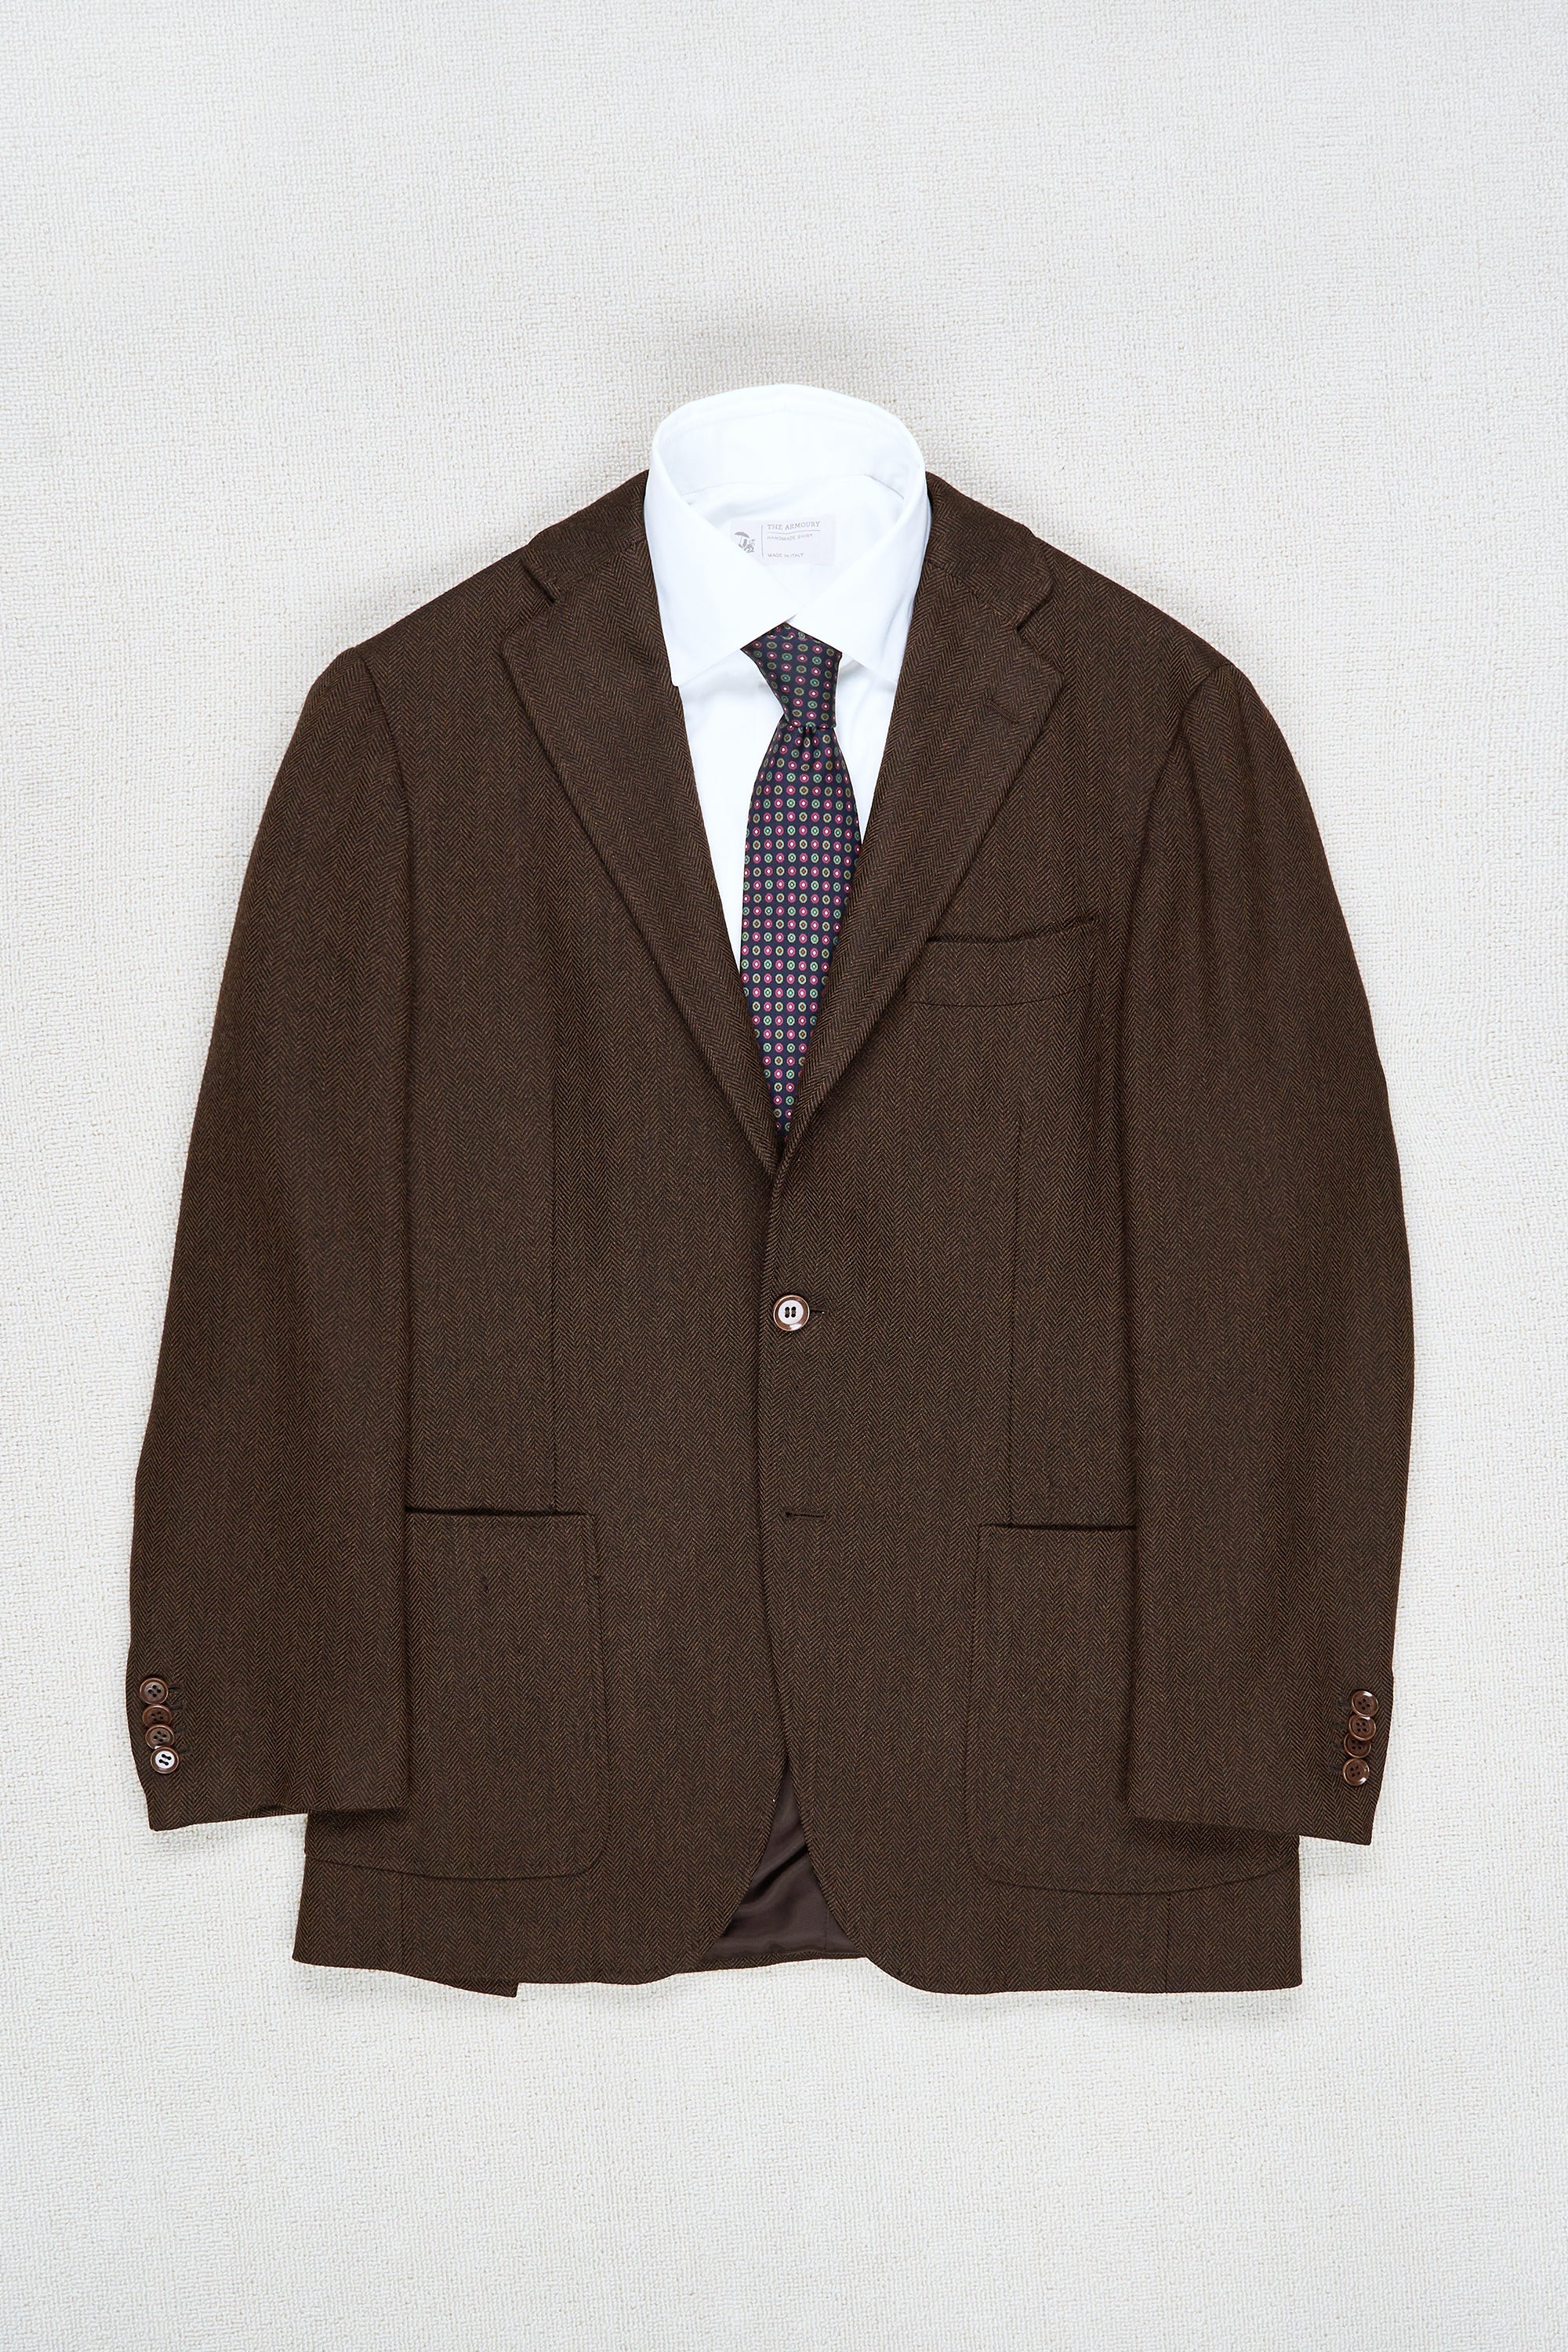 Ring Jacket 184 Dark Brown Herringbone Wool Sport Coat